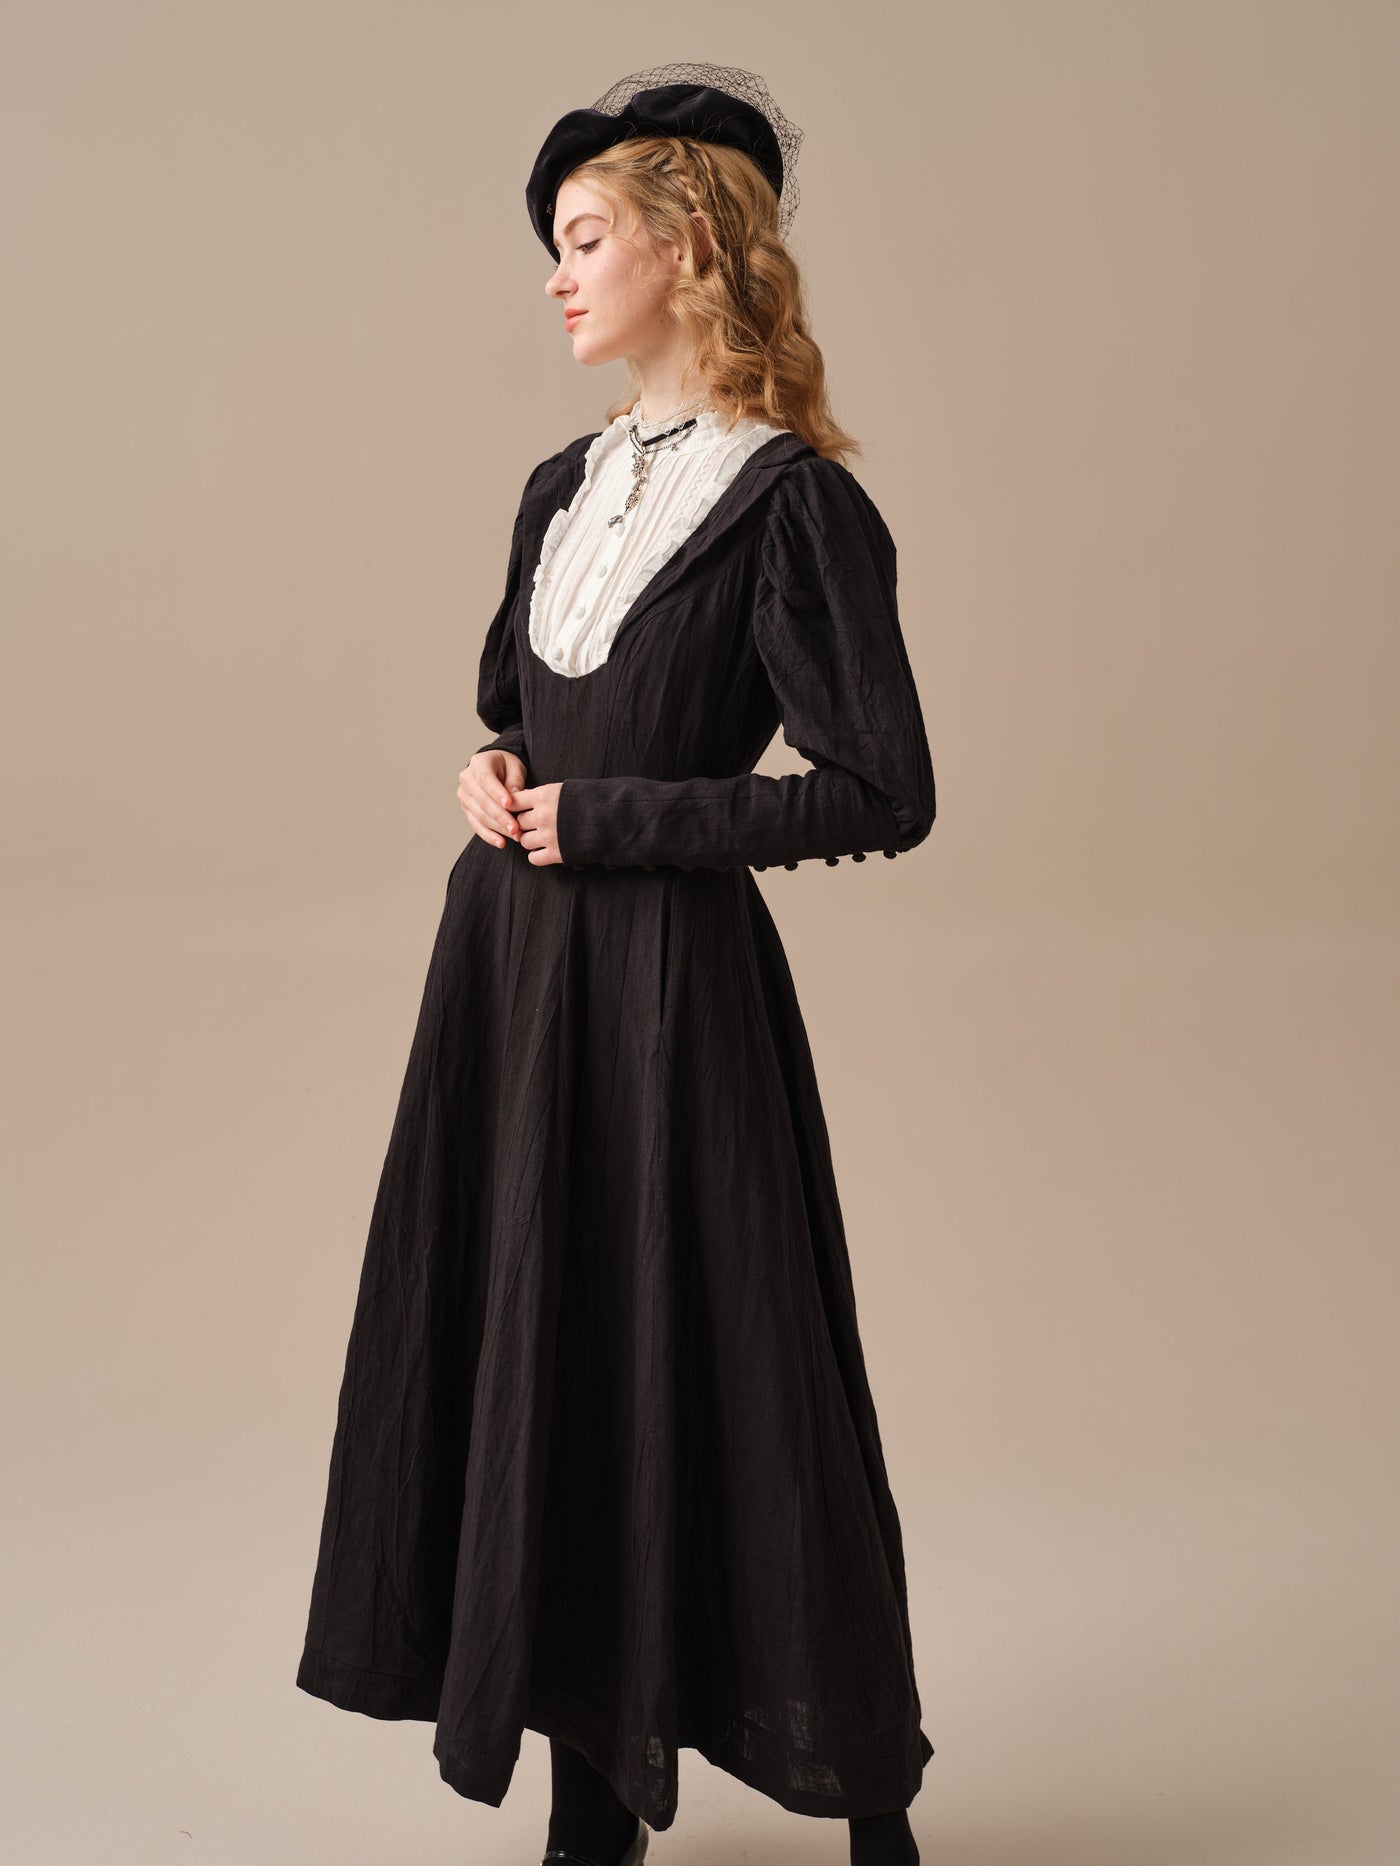 Luna 19 | 100% linen pintucked black dress